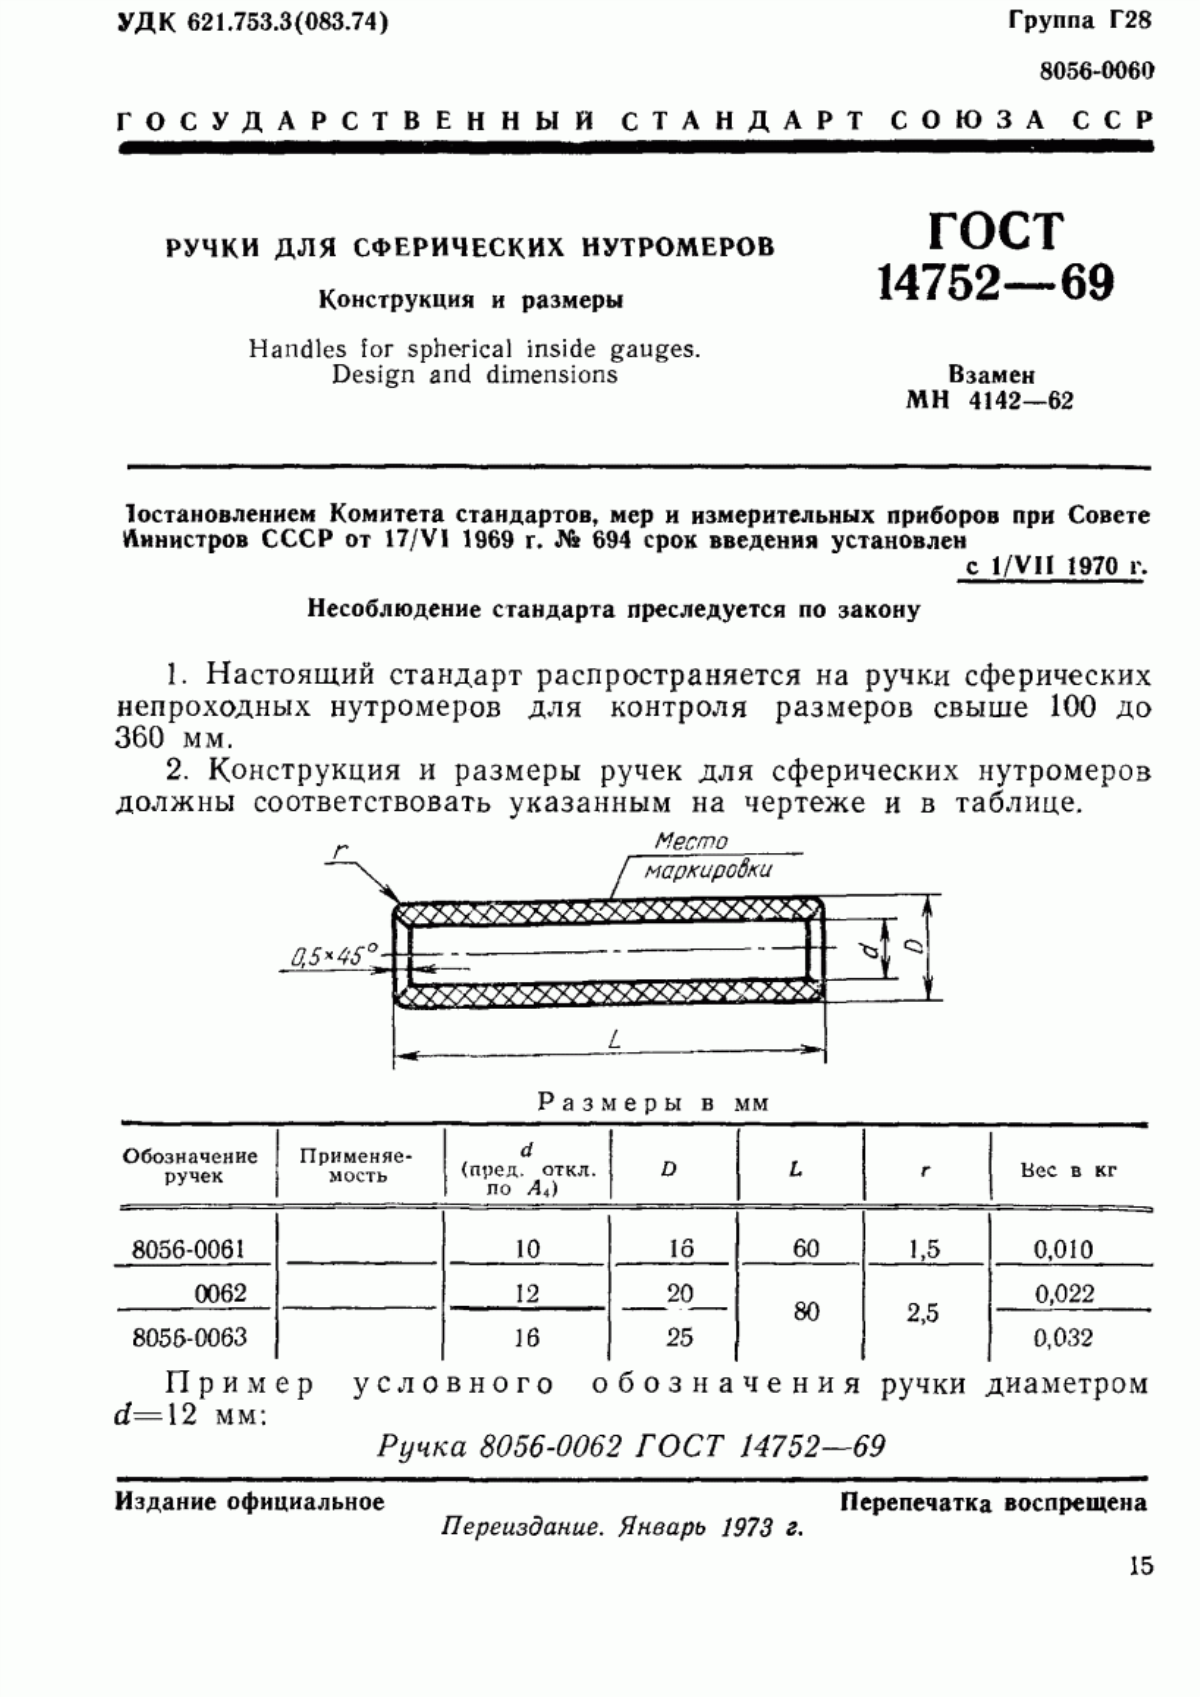 ГОСТ 14752-69 Ручки для сферических нутромеров. Конструкция и размеры